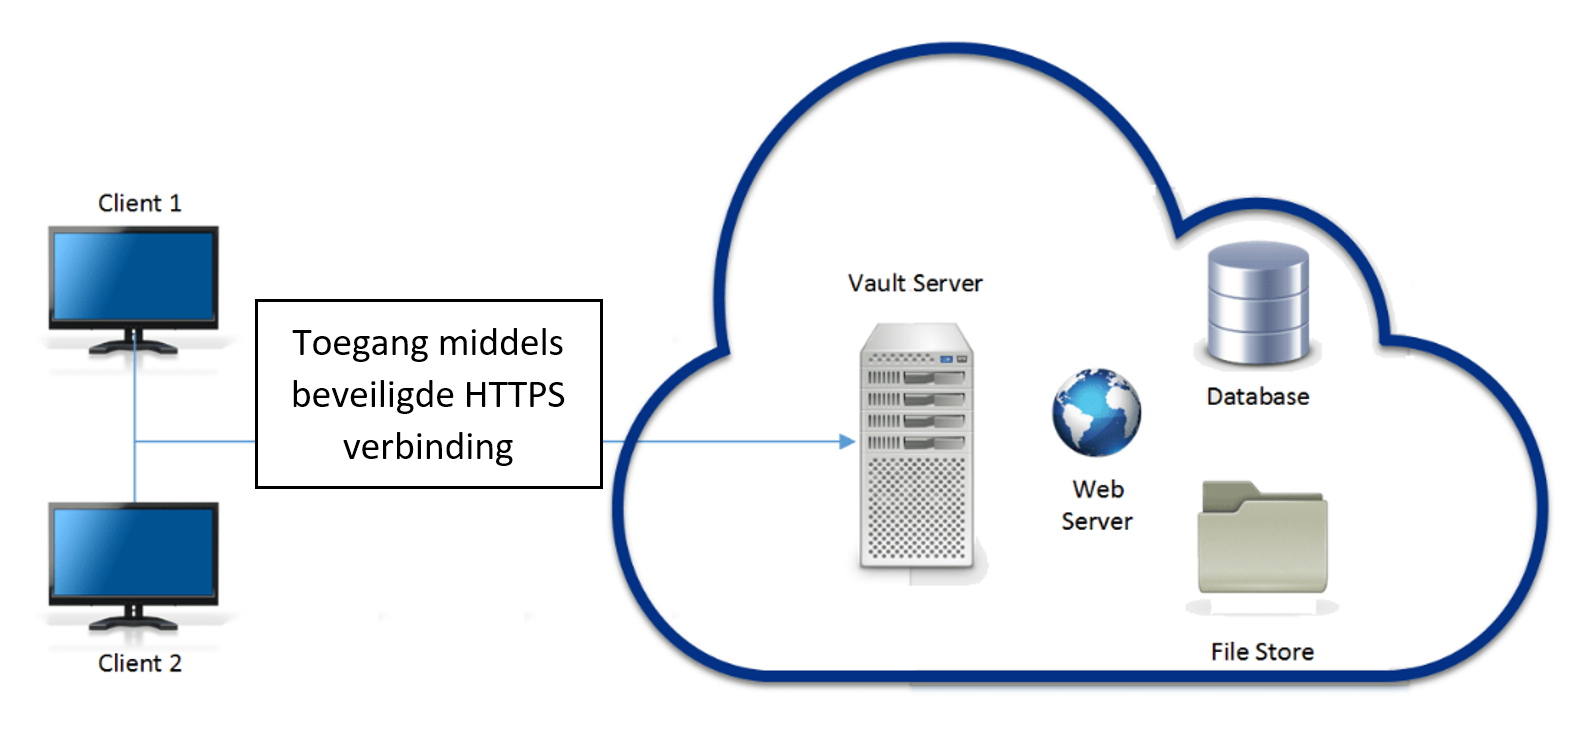 Vault installatie op een server in de cloud